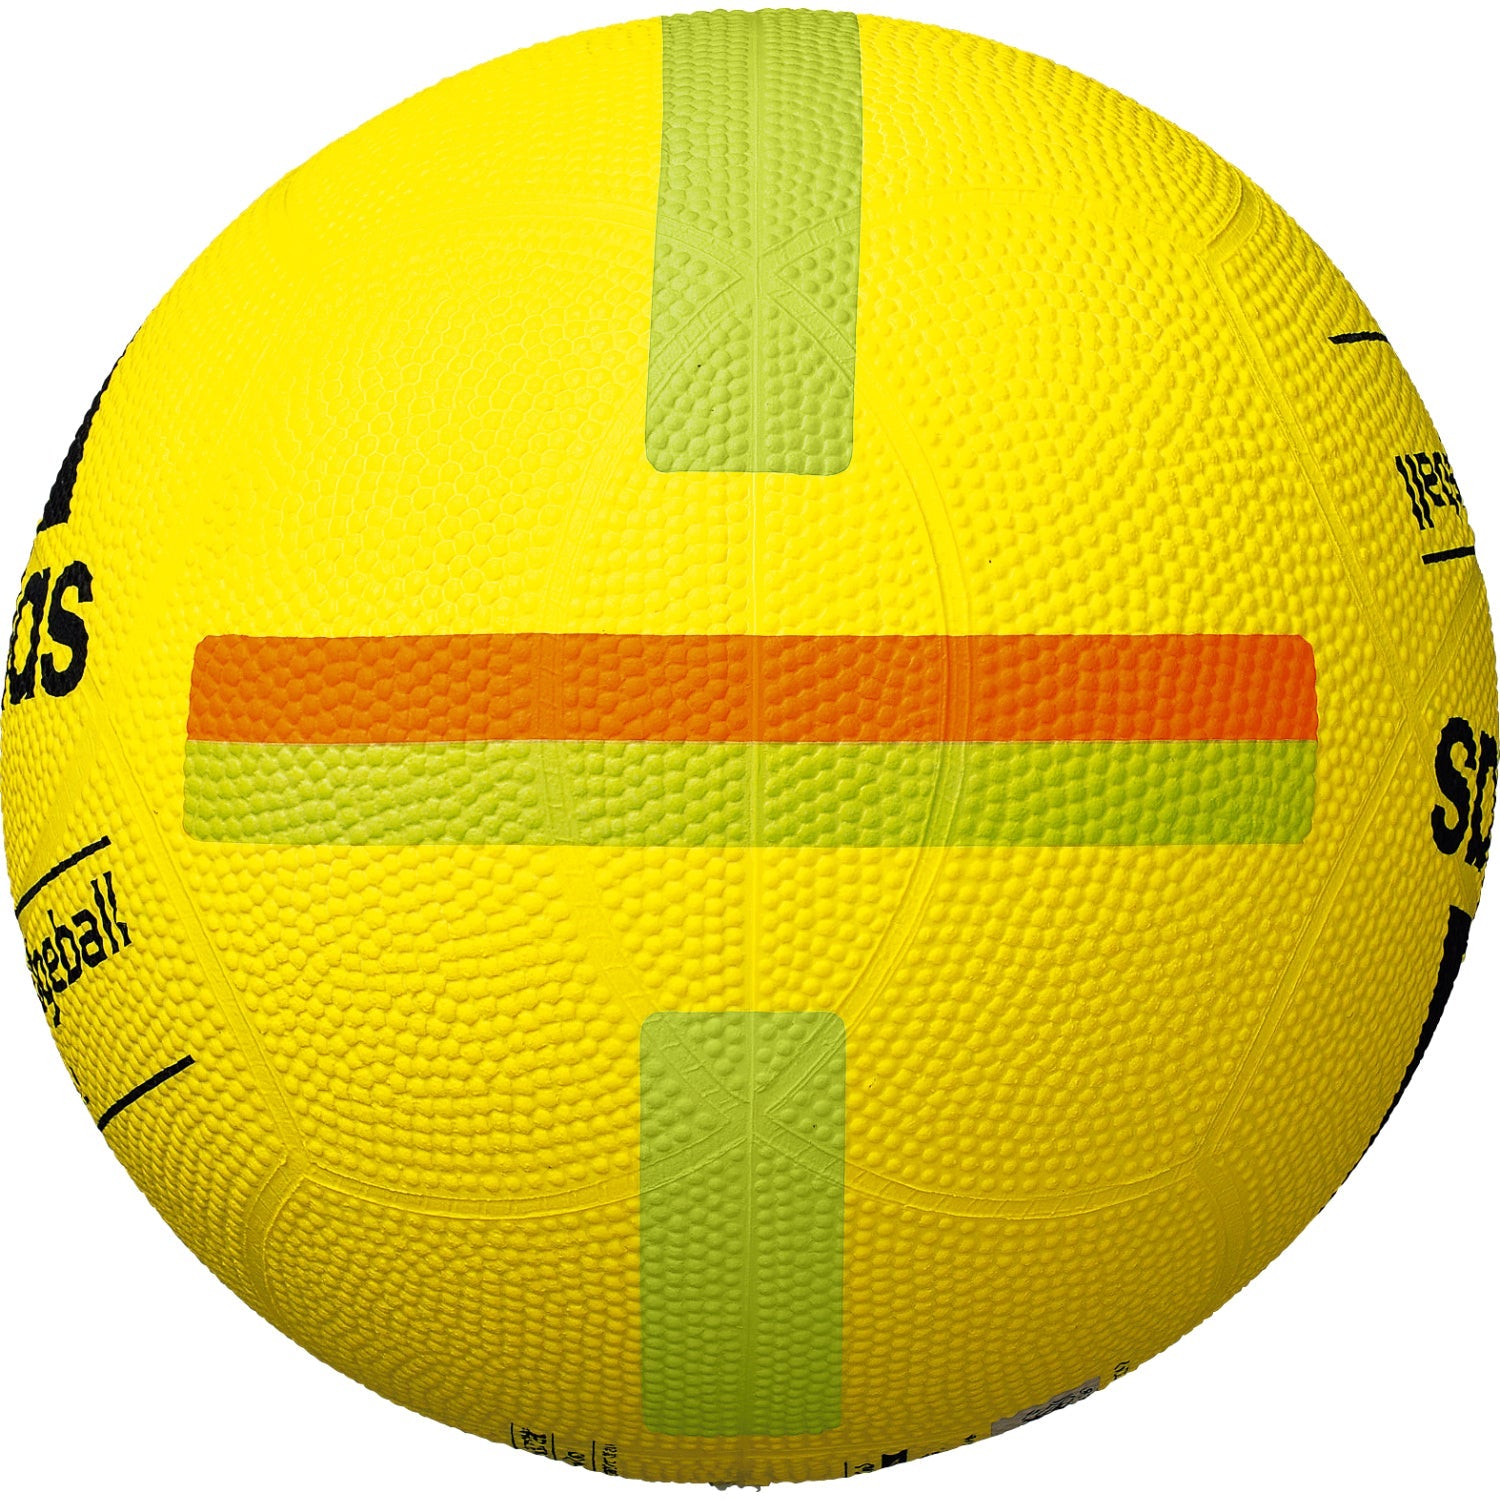 ソフトドッジボール（2号球） | モルテン公式オンラインショップ